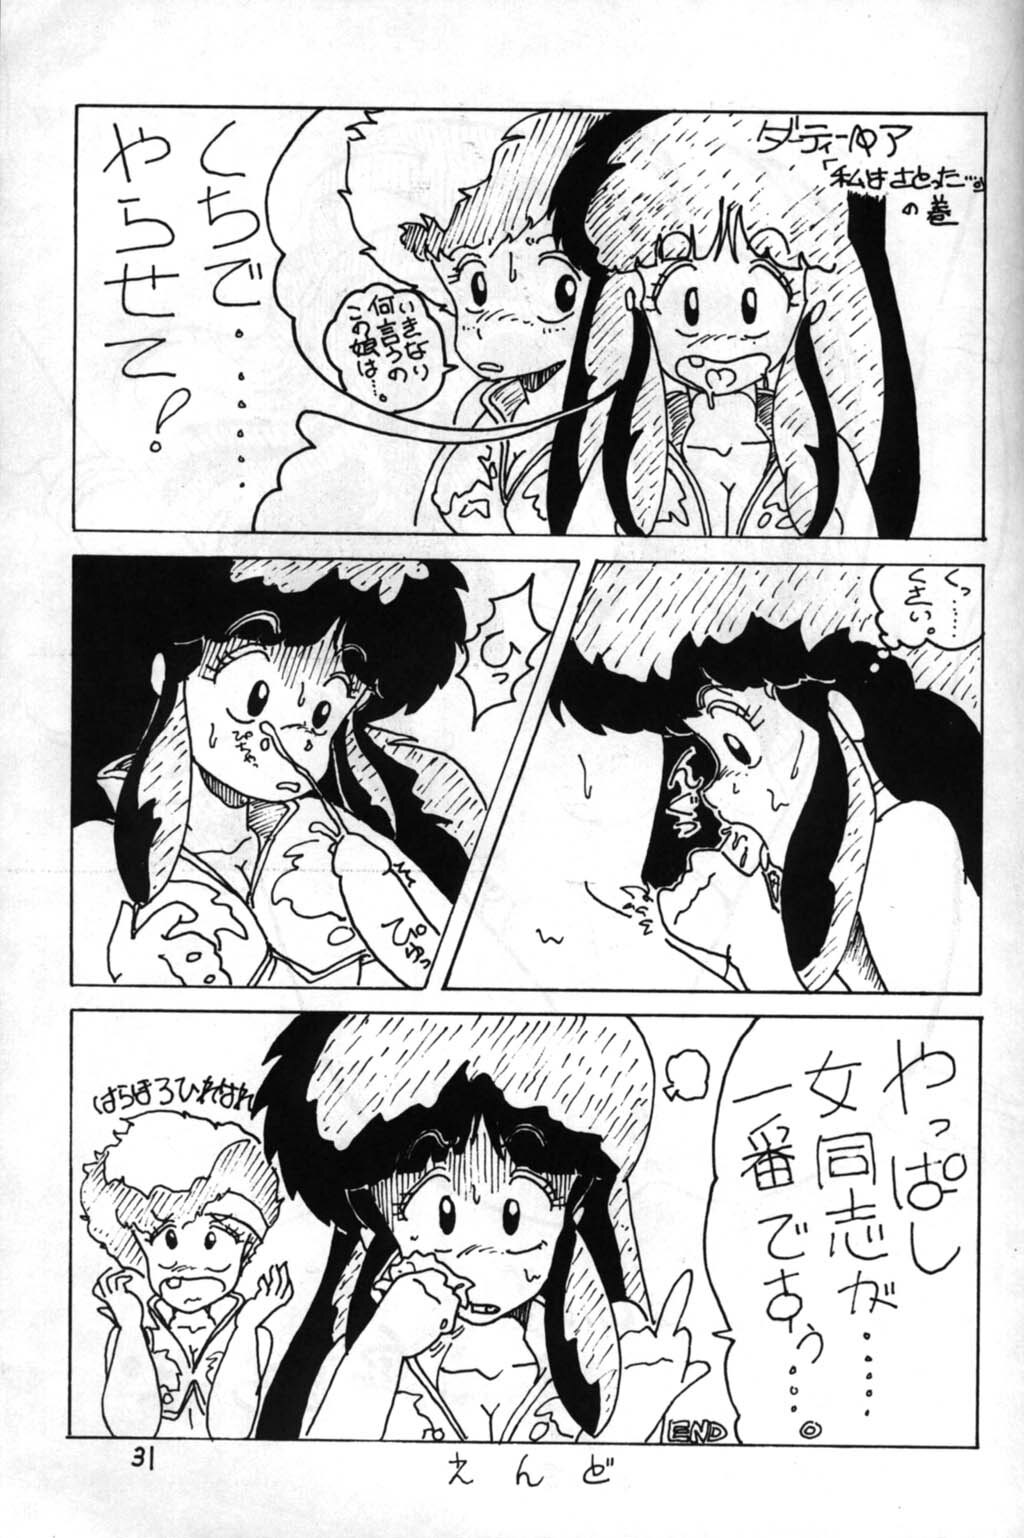 [Puchi Bunny-sha] Puchi Bunny 2 (Dirty Pair) page 31 full